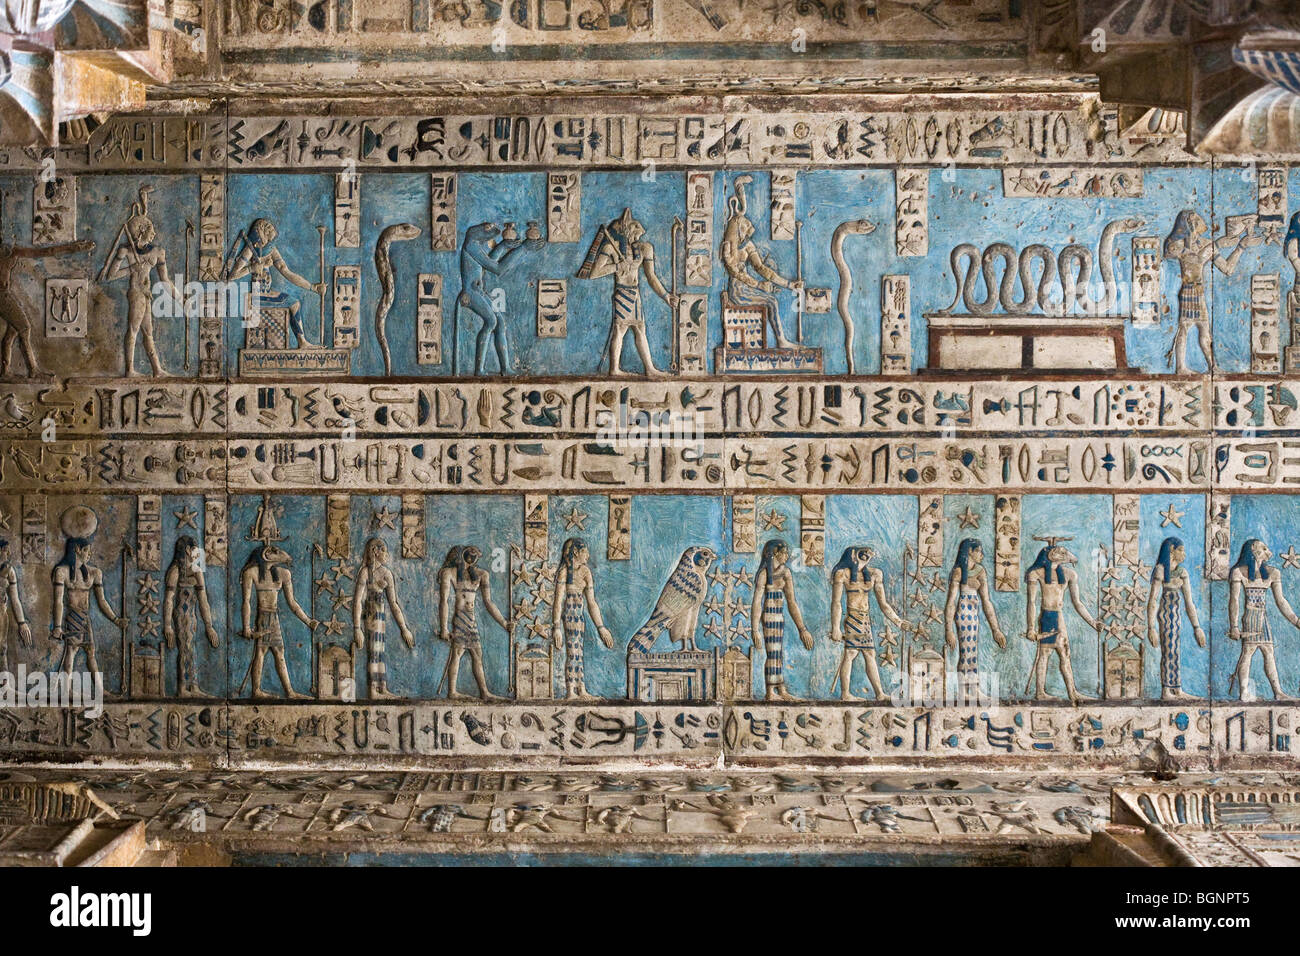 Die frisch gereinigte Decke mit astronomischen Kulissen der ptolemäischen Tempel der Hathor in Dendera, Niltal, Ägypten Stockfoto